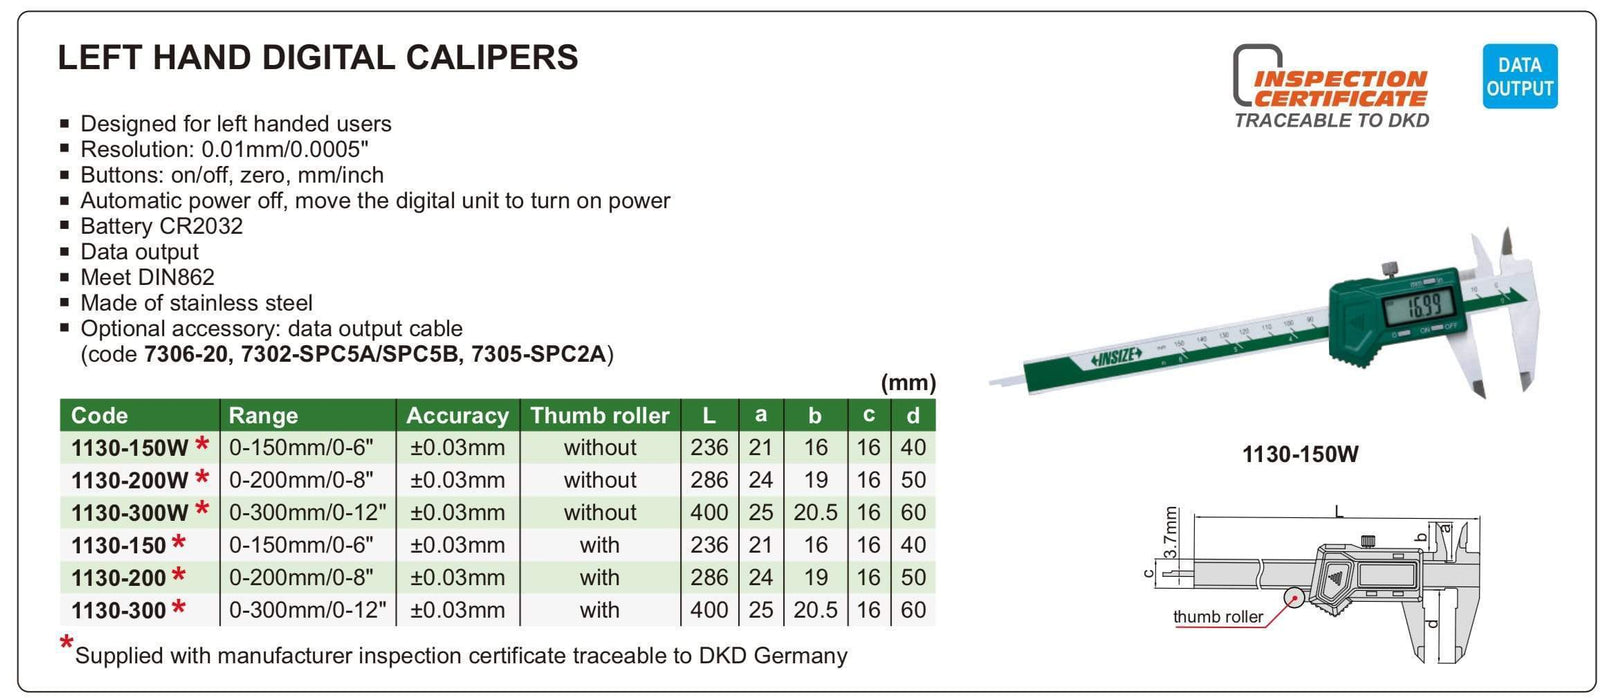 1130-150 - Παχύμετρο Ψηφιακό  για Αριστερόχειρες <300mm